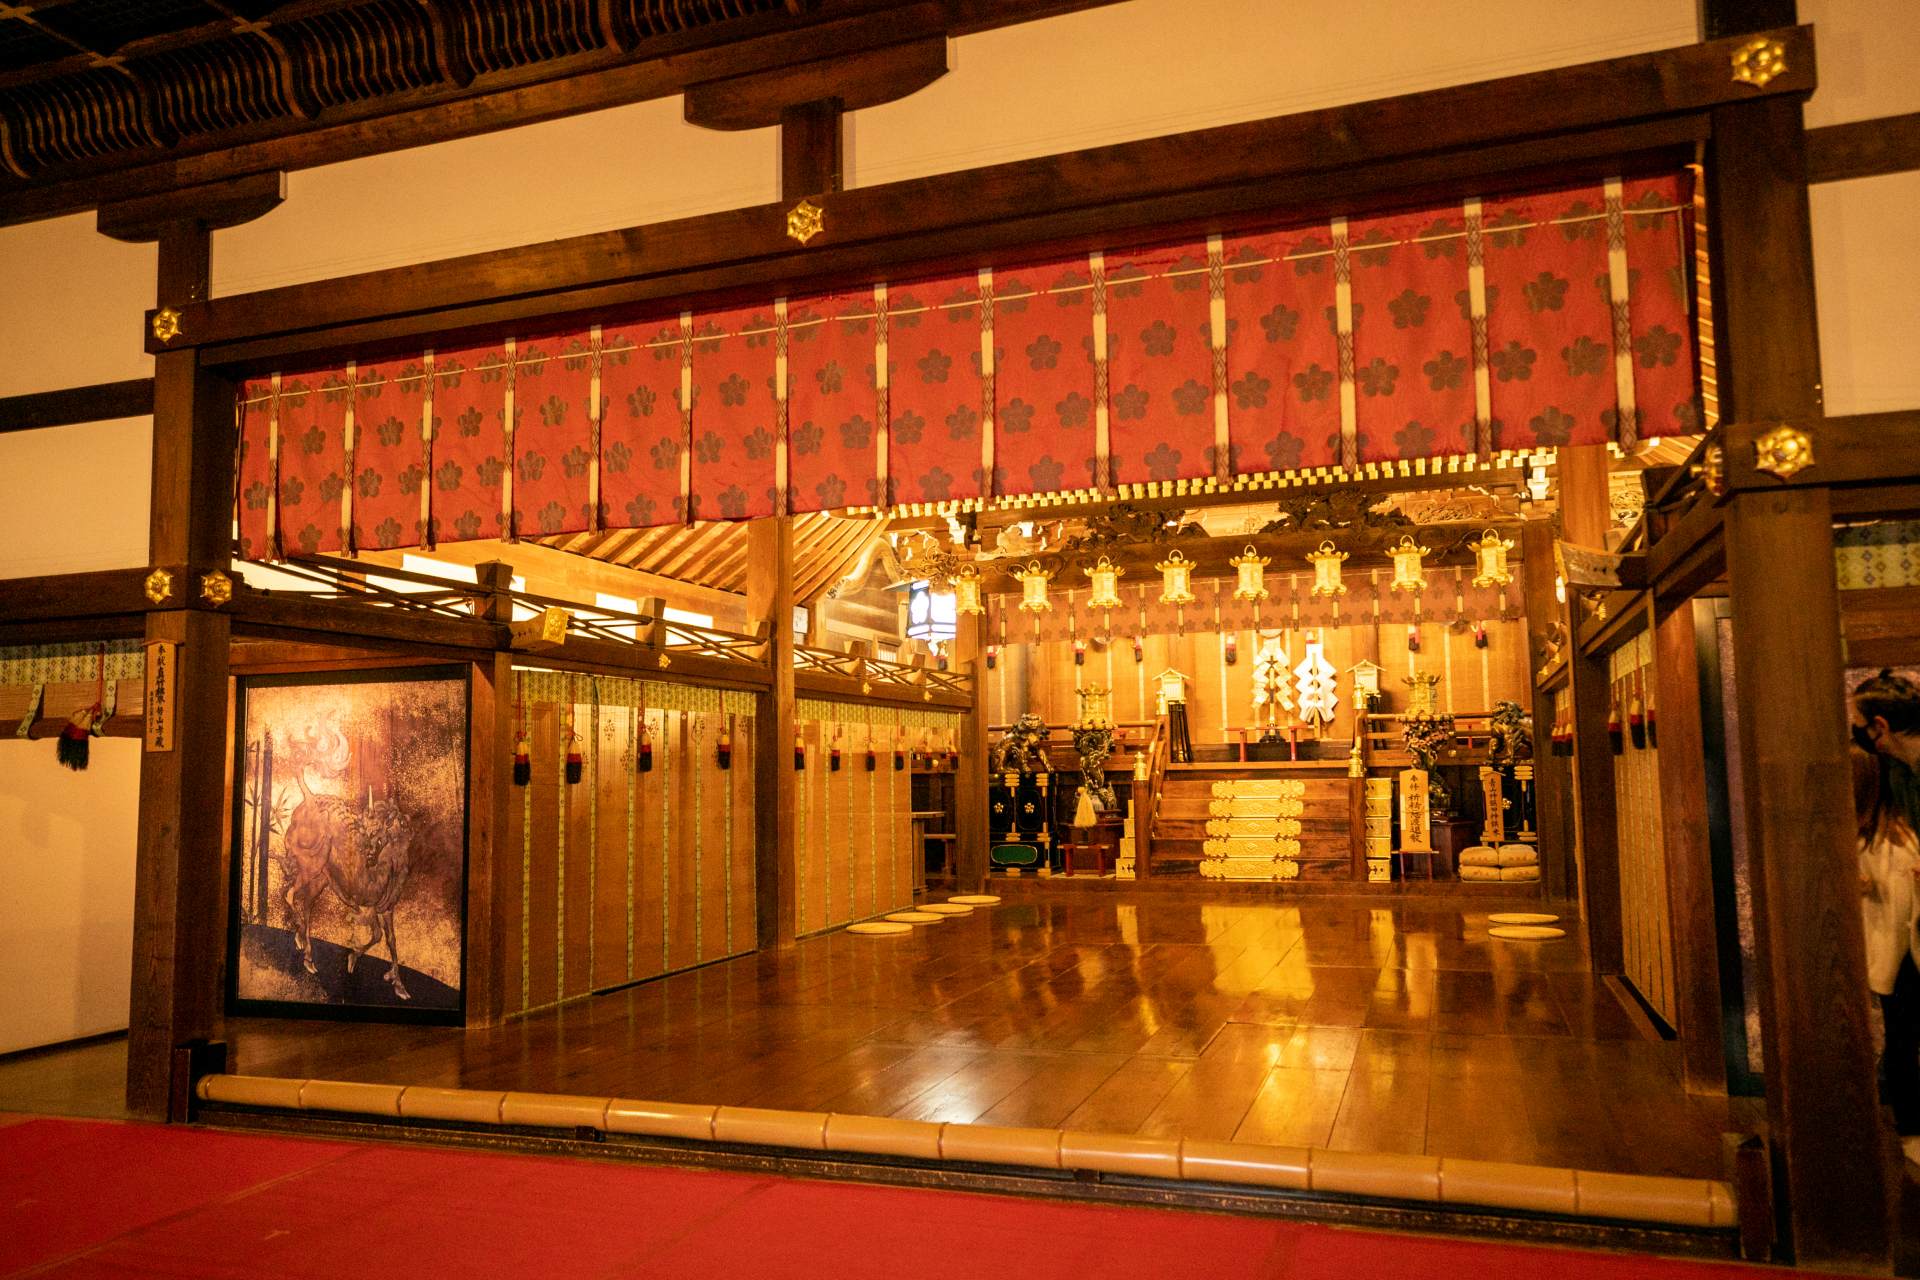 L'intérieur du siège a une atmosphère solennelle et sacrée. Derrière la cloison en bambou se trouvent la salle des offrandes et la salle principale.